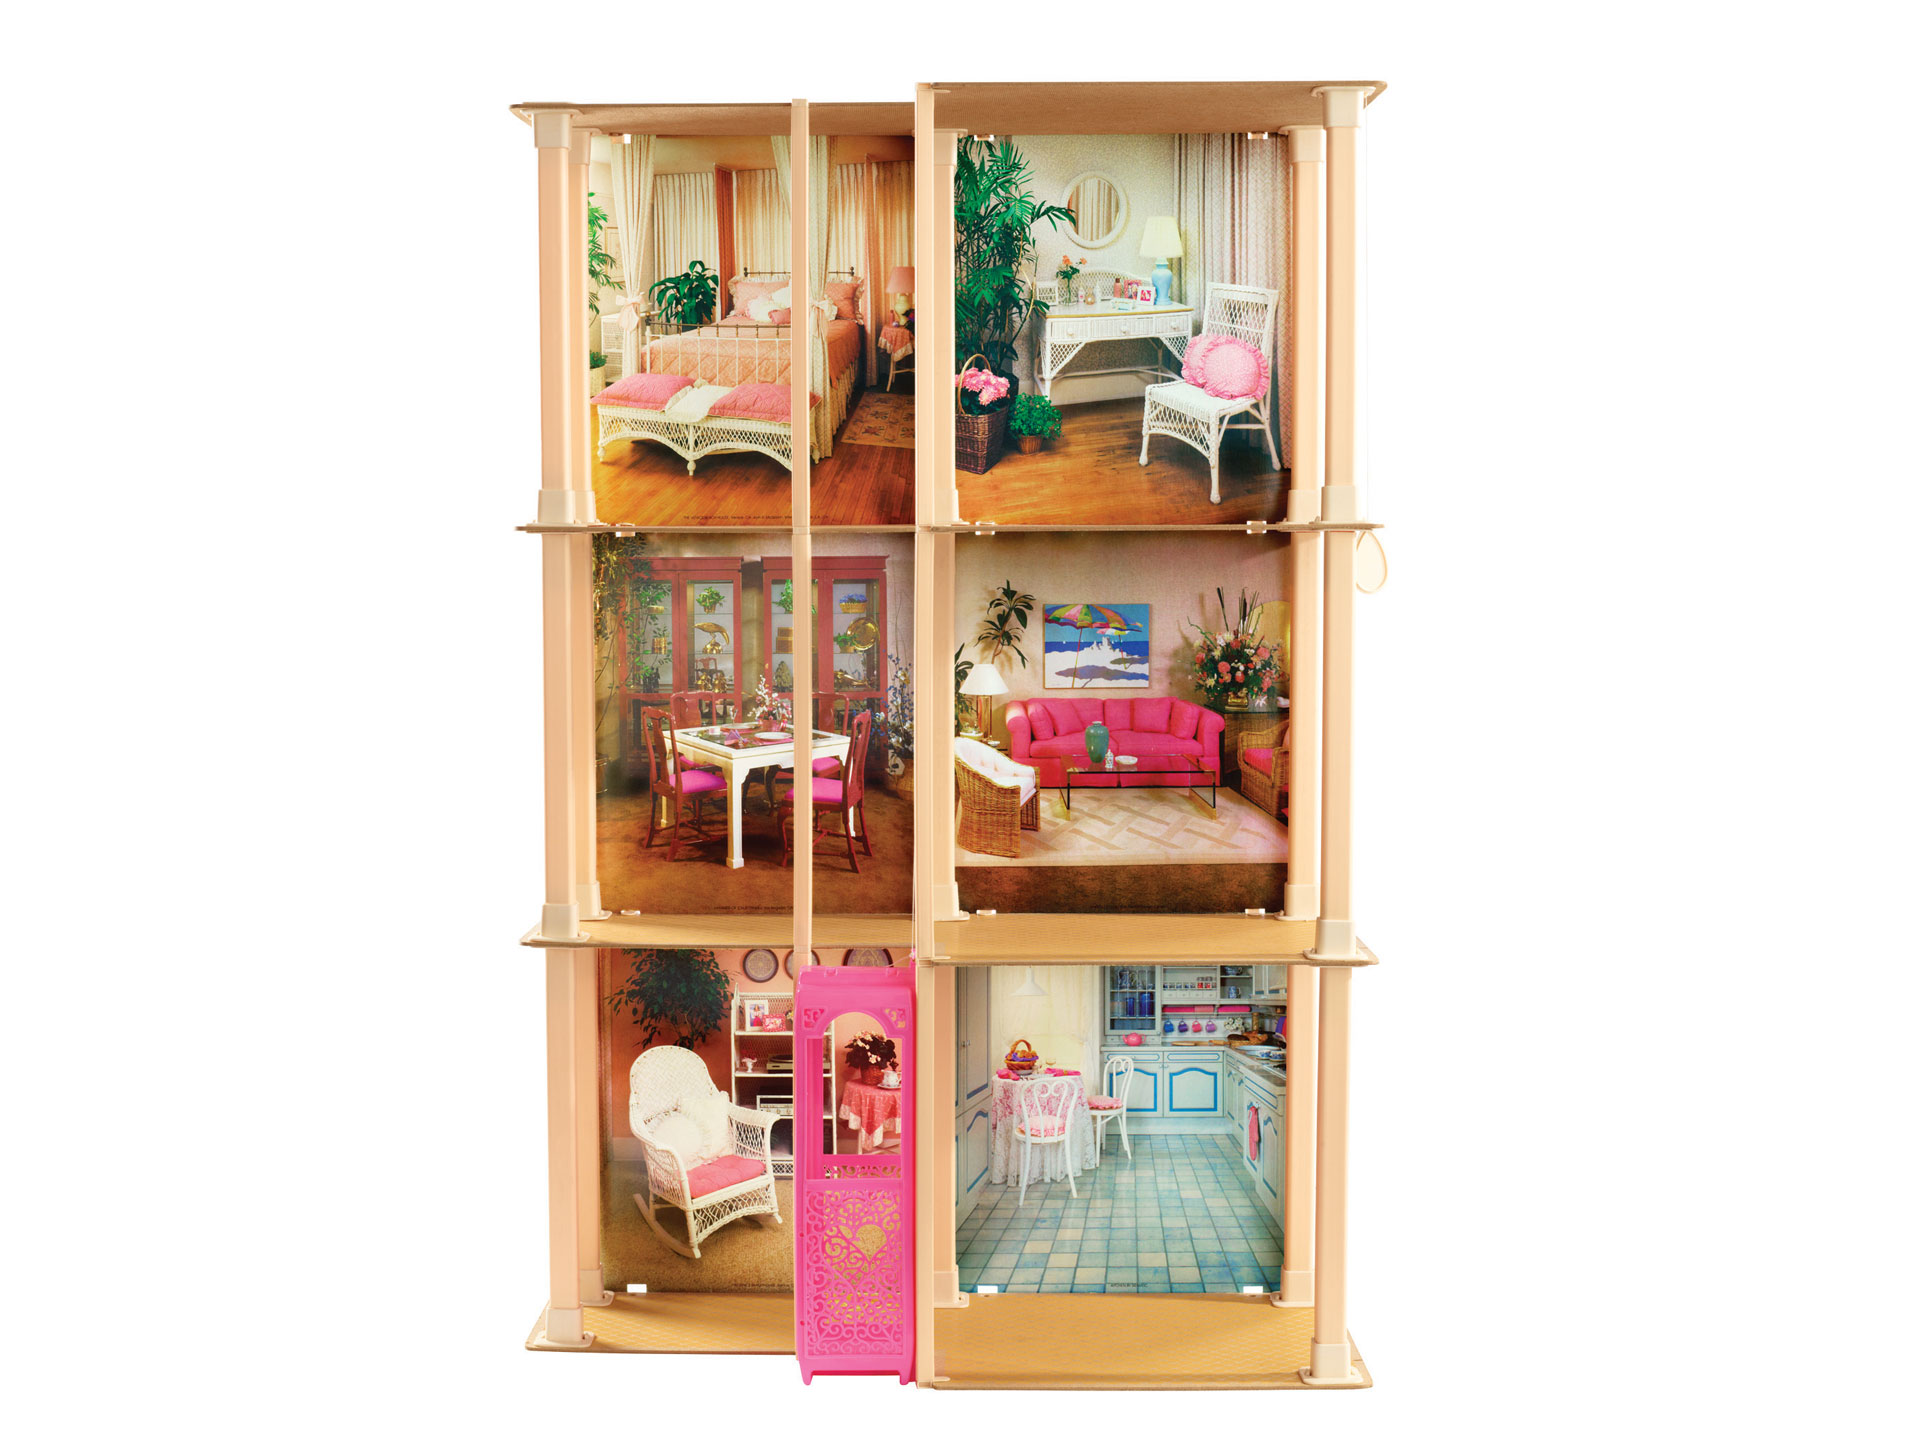 1983 Barbie Dream House - Barbiecore Interiors